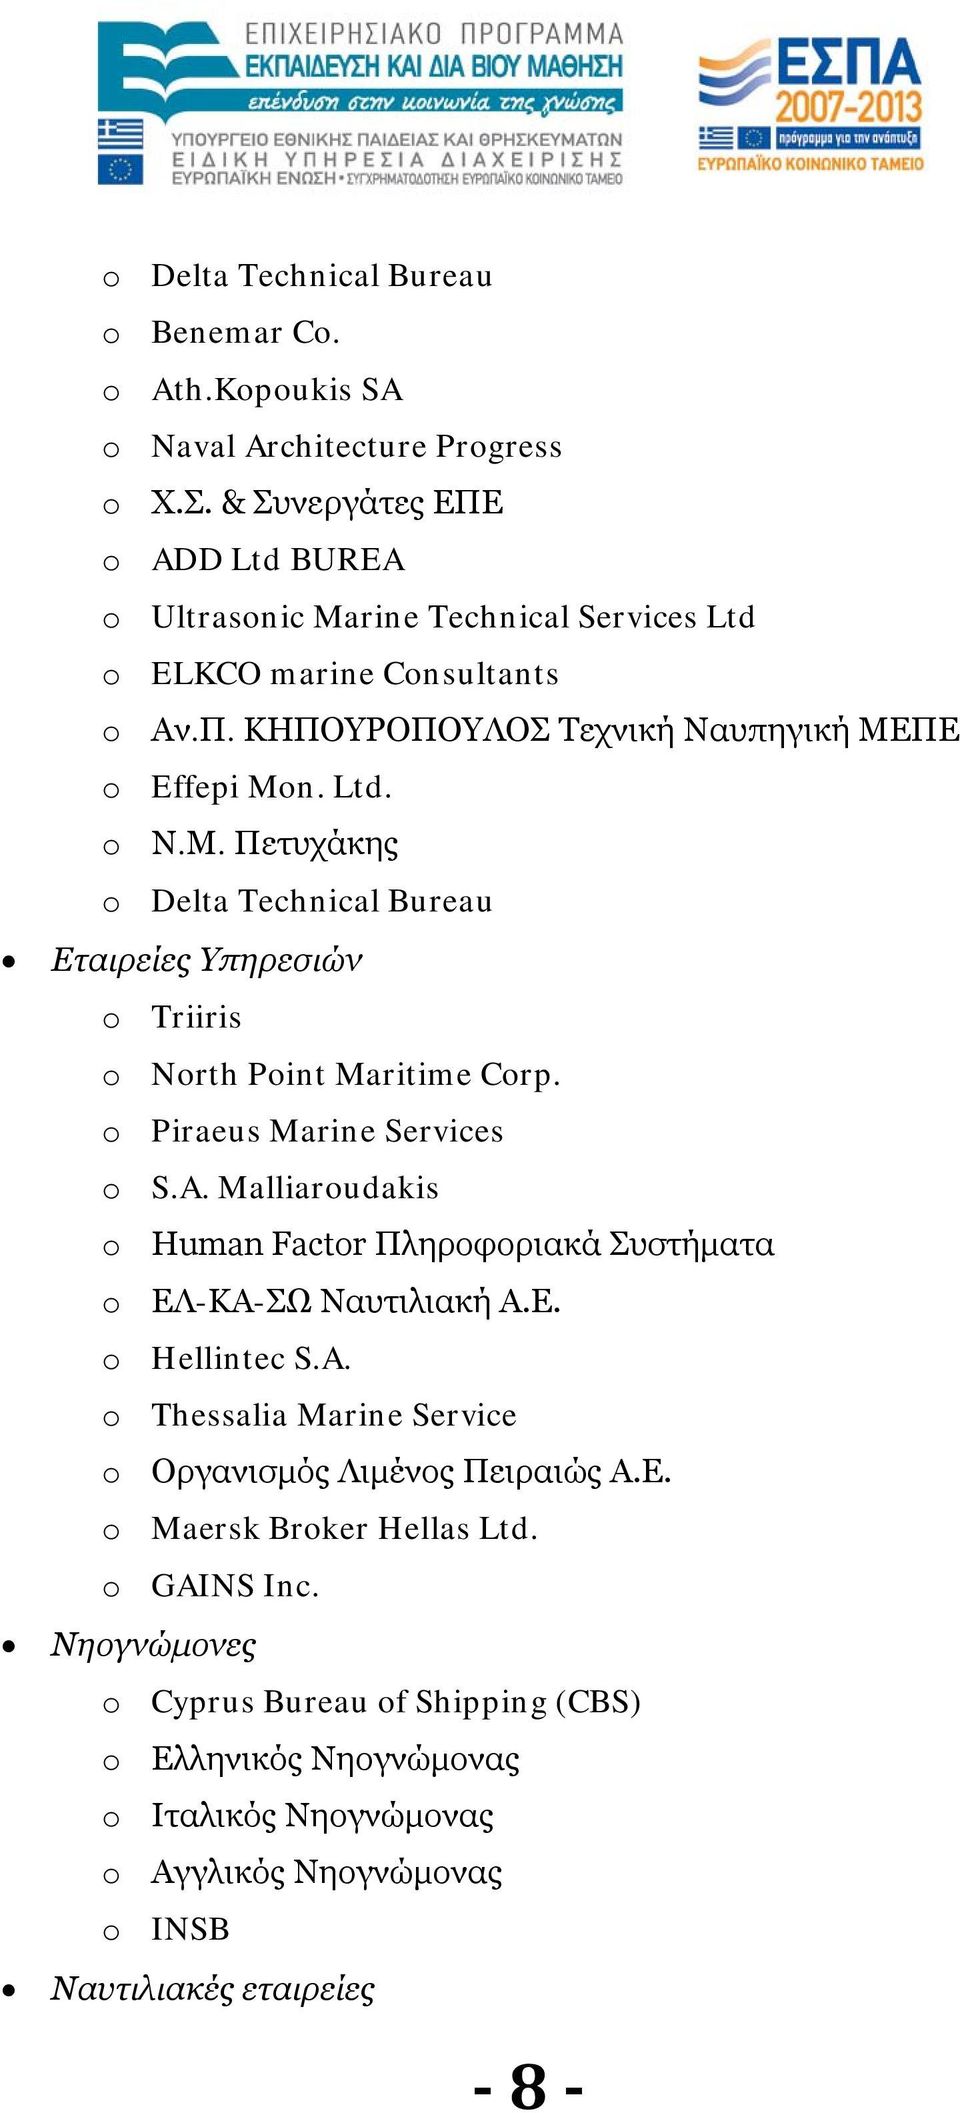 ΠΕ o Effepi Mon. Ltd. o Ν.Μ. Πετυχάκης o Delta Technical Bureau Εταιρείες Υπηρεσιών o Triiris o North Point Maritime Corp. o Piraeus Marine Services o S.A.